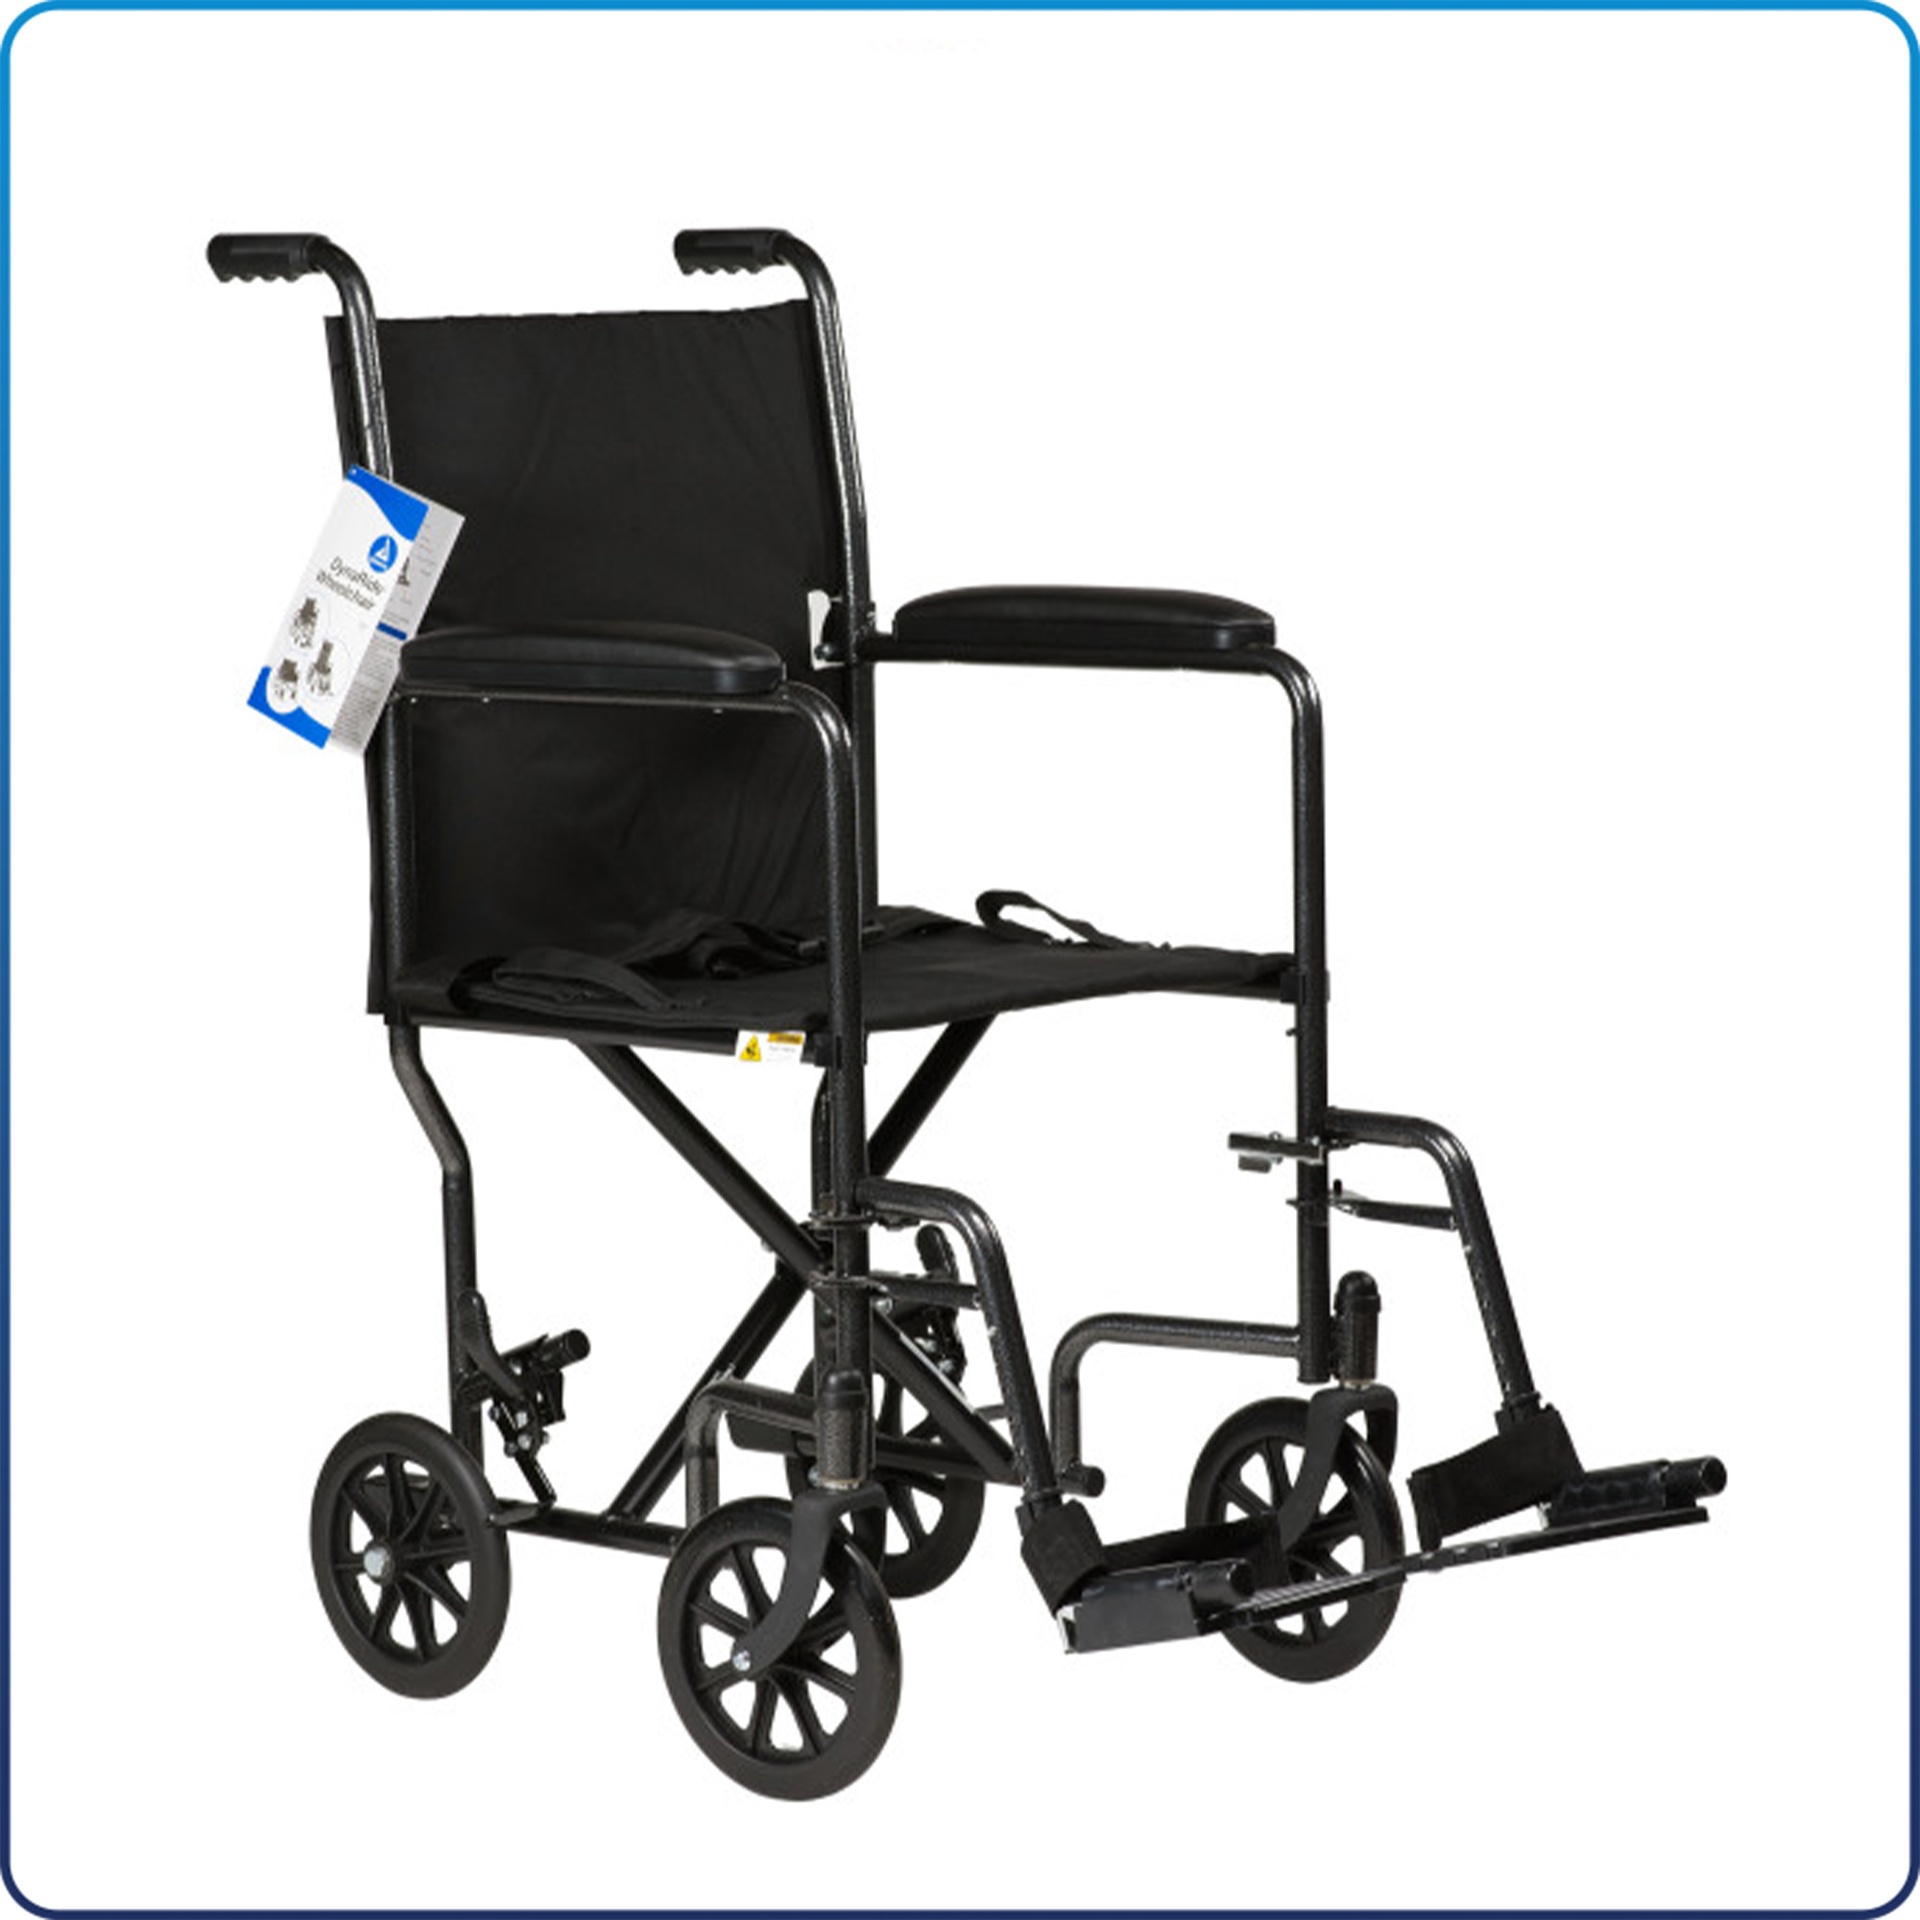 [DYN10242] DynaRide Transporting Wheelchair